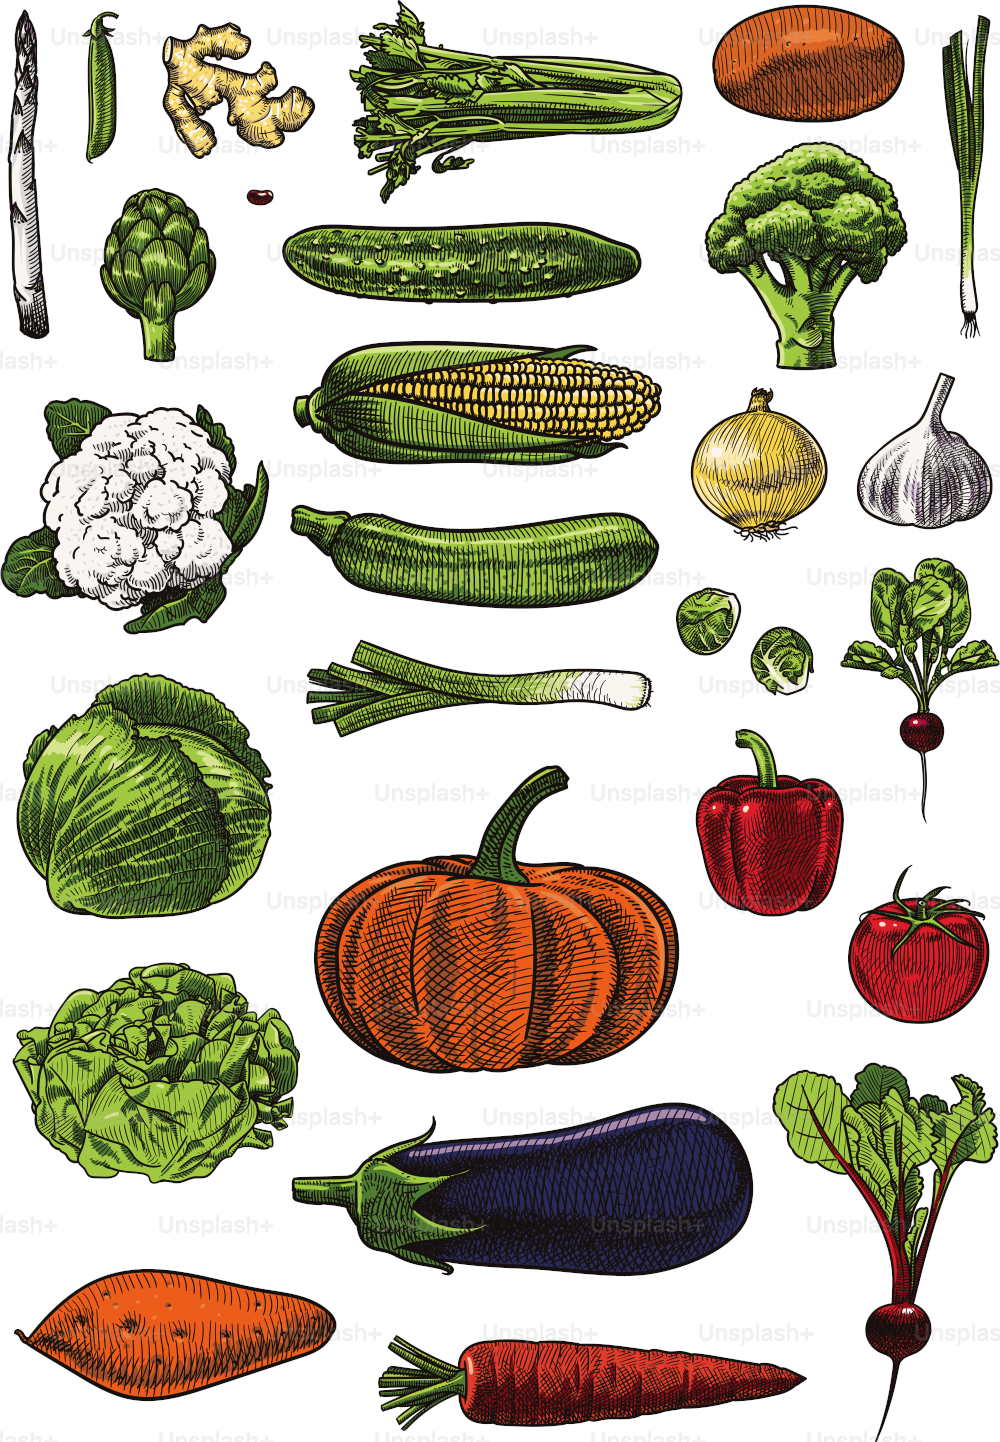 Illustrations vectorielles de légumes assortis. Soigneusement regroupés et étiquetés, faciles à sélectionner et à modifier.